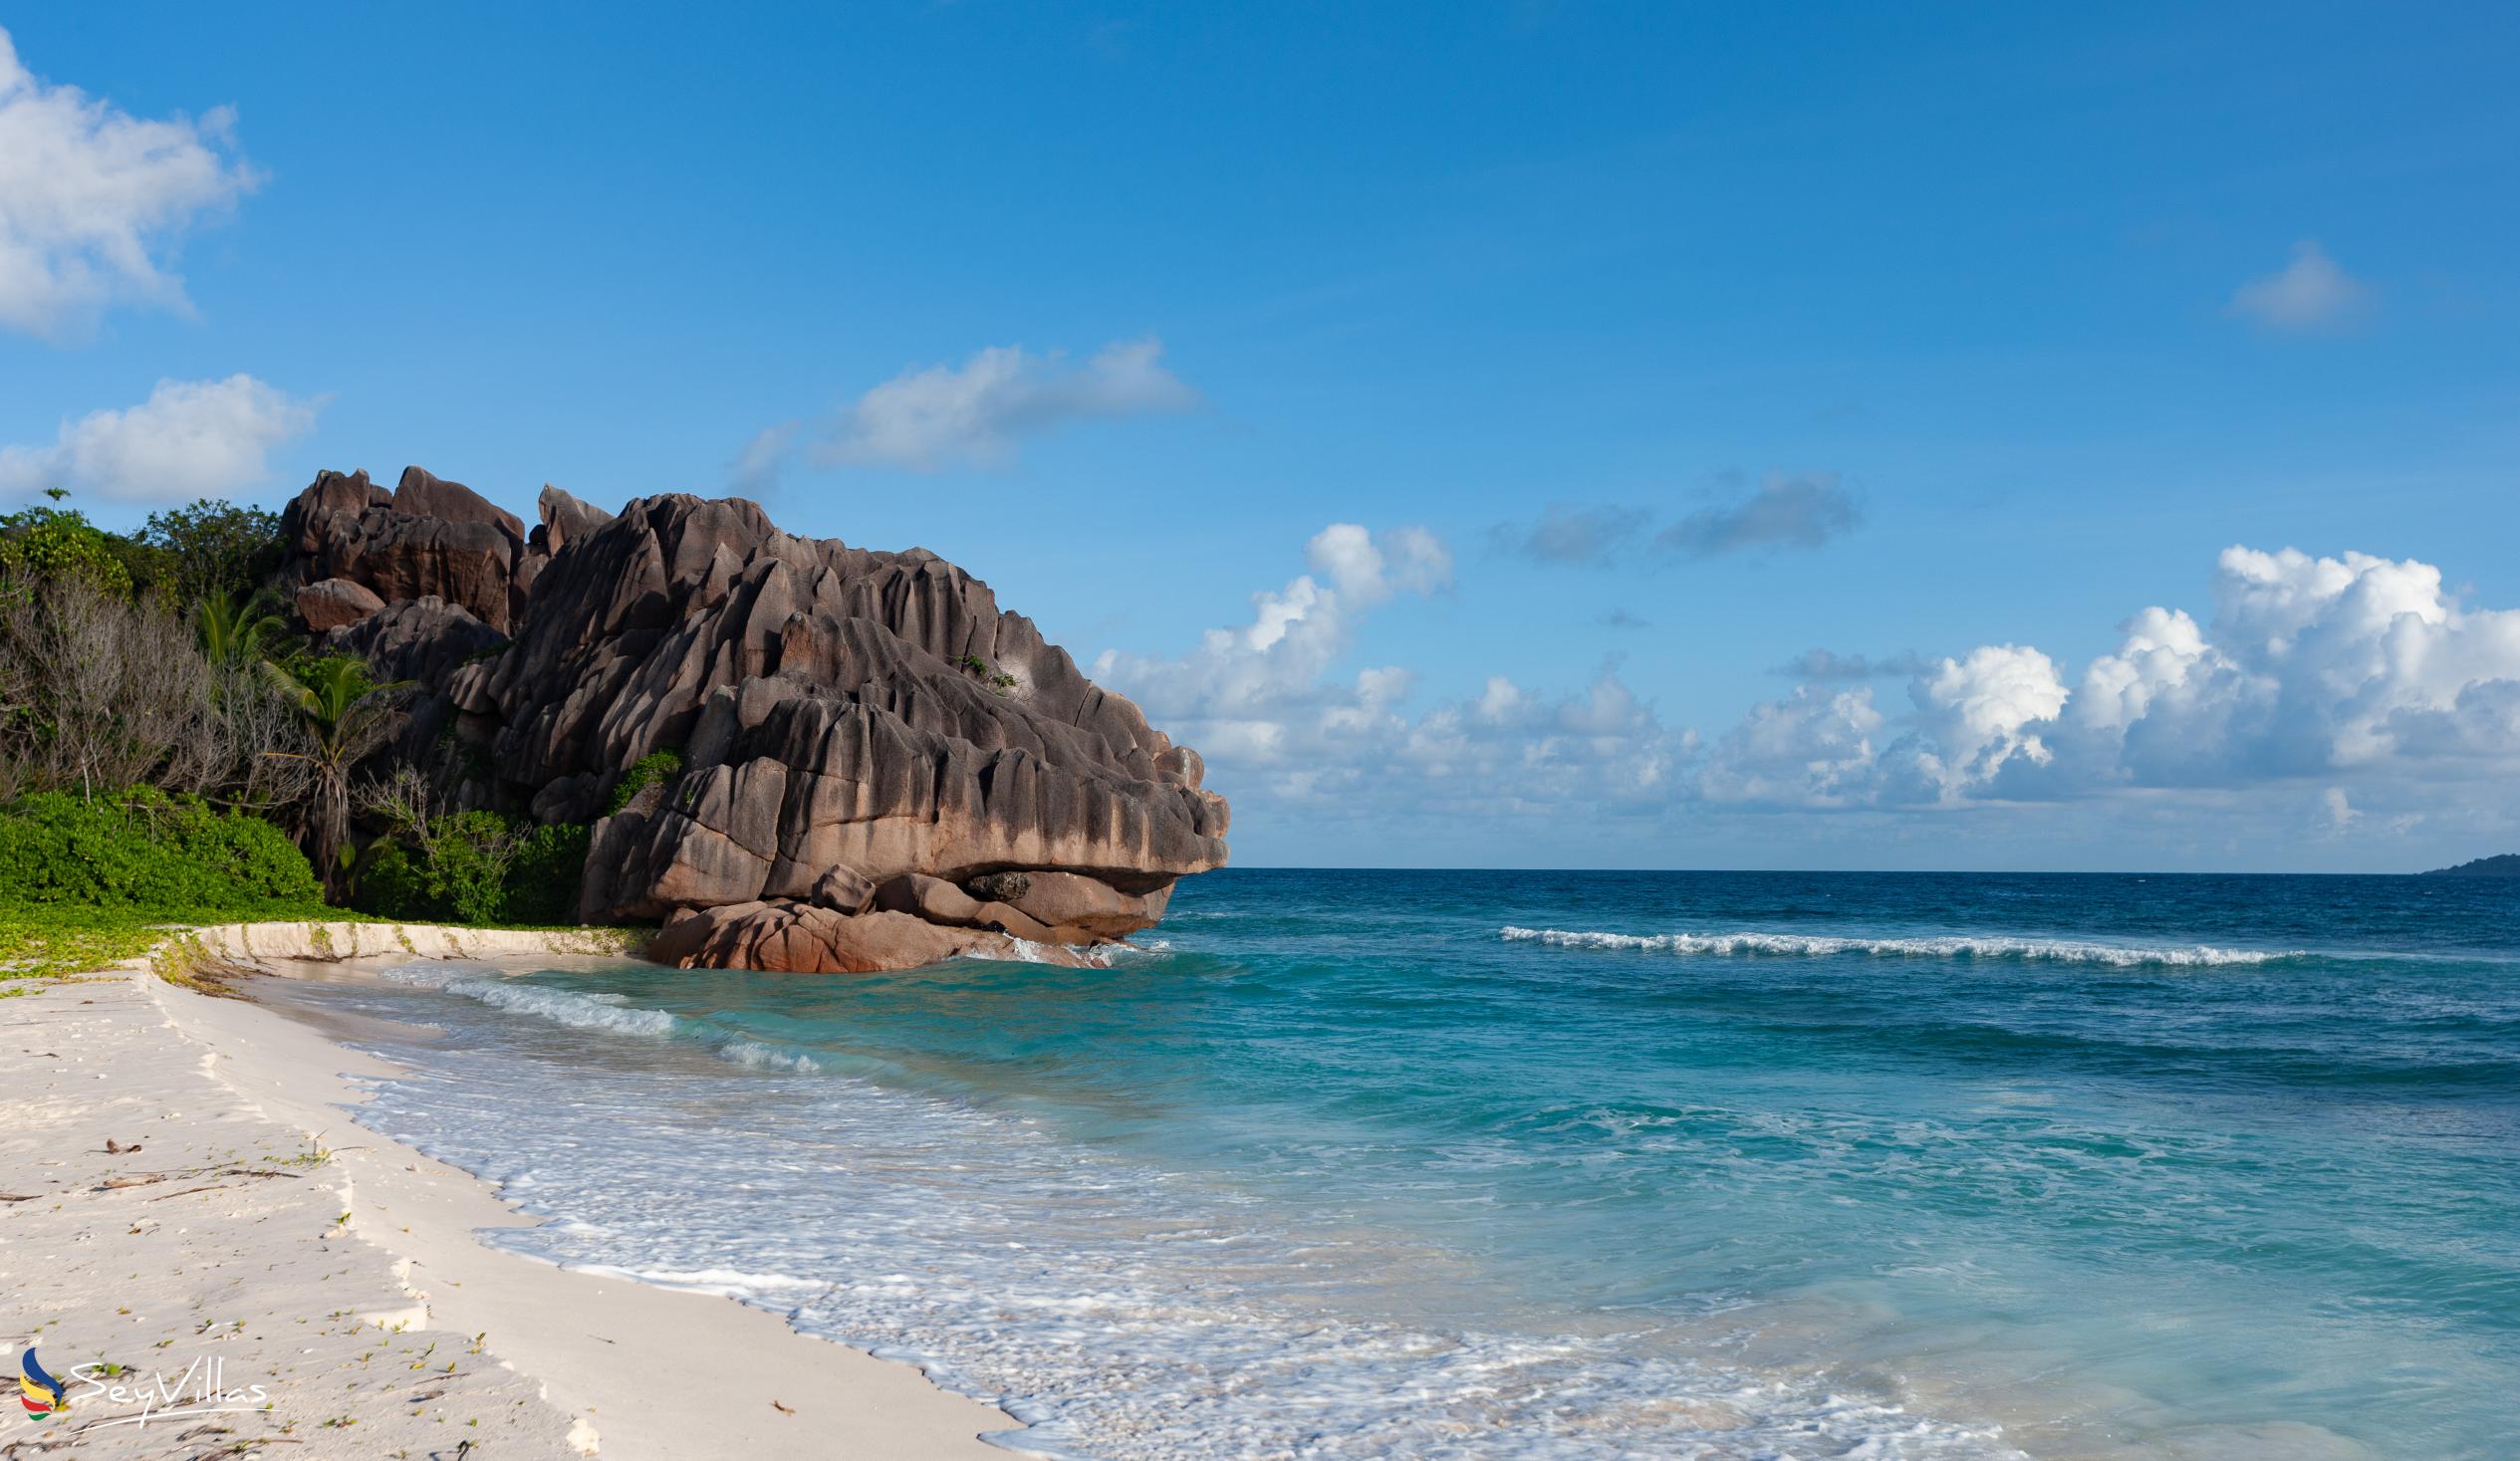 Foto 26: Anse Grosse Roche Beach Villa - Posizione - La Digue (Seychelles)